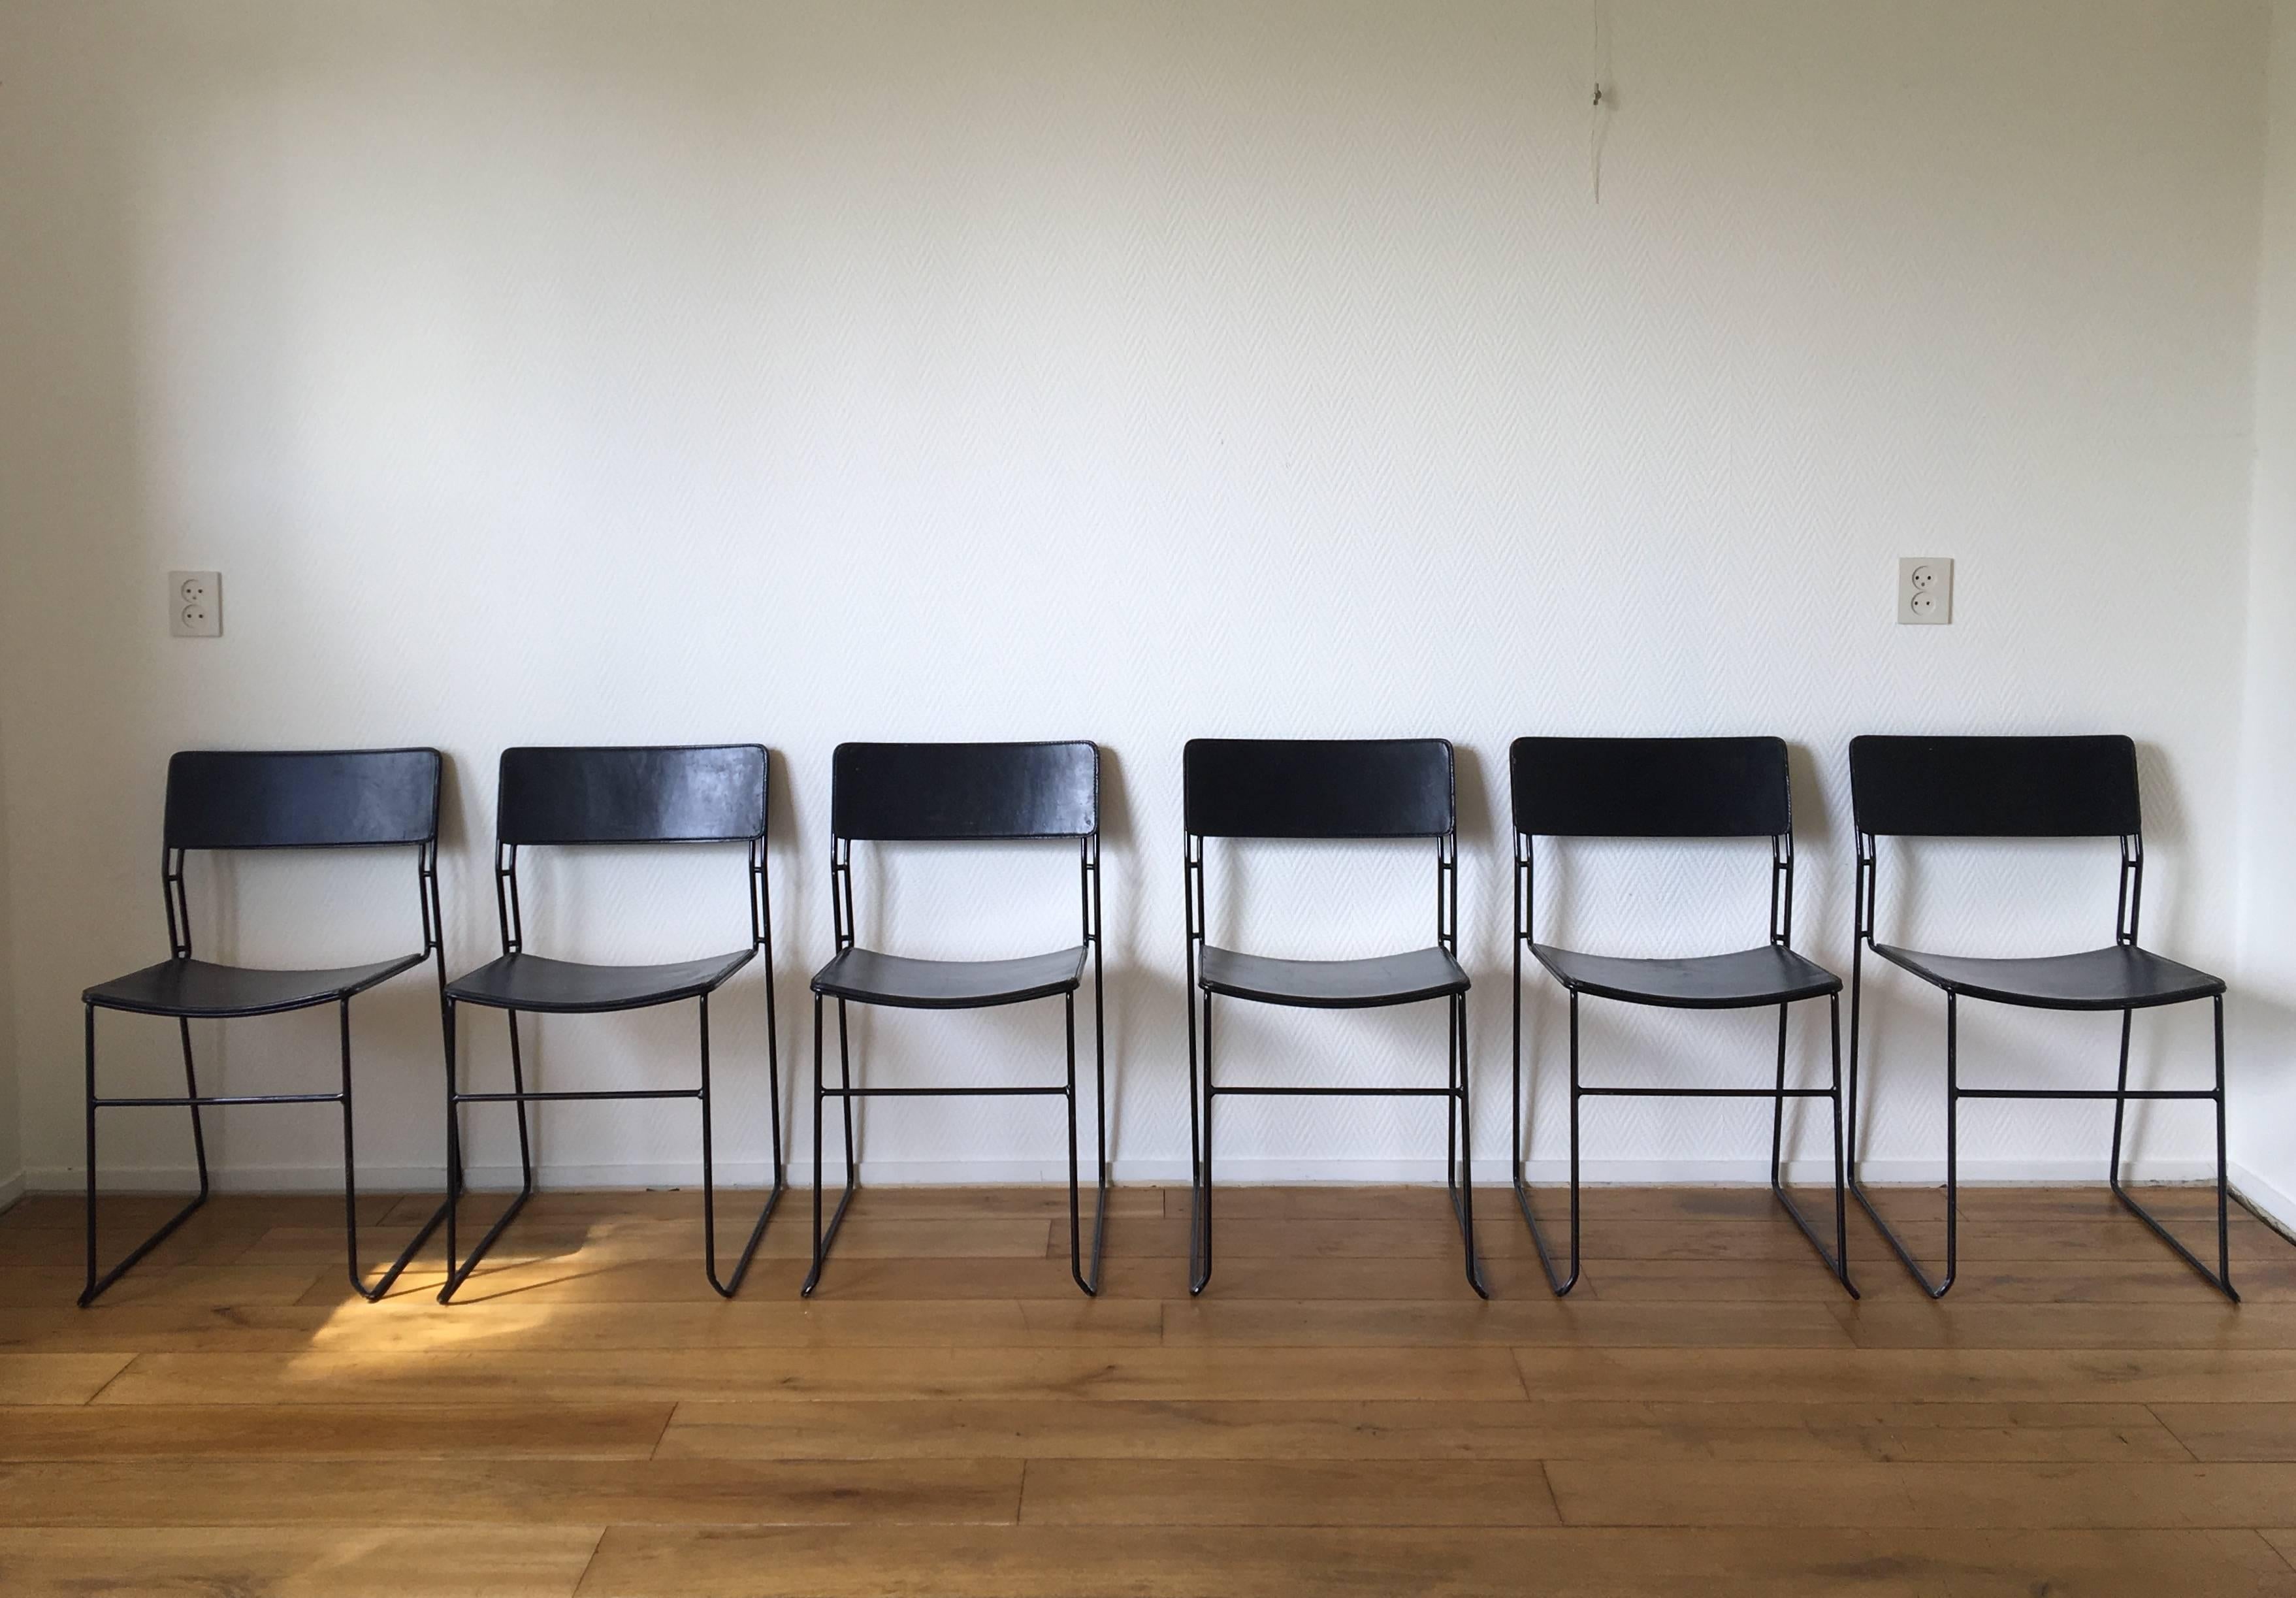 Seltener minimalistischer Satz von sechs Esszimmerstühlen, hergestellt von Arrben, Italien. Die Stühle haben ein schwarz emailliertes Gestell aus schwerem Metall und sind mit dickem schwarzem Cuir-Leder gepolstert. Während die Stühle stapelbar sind